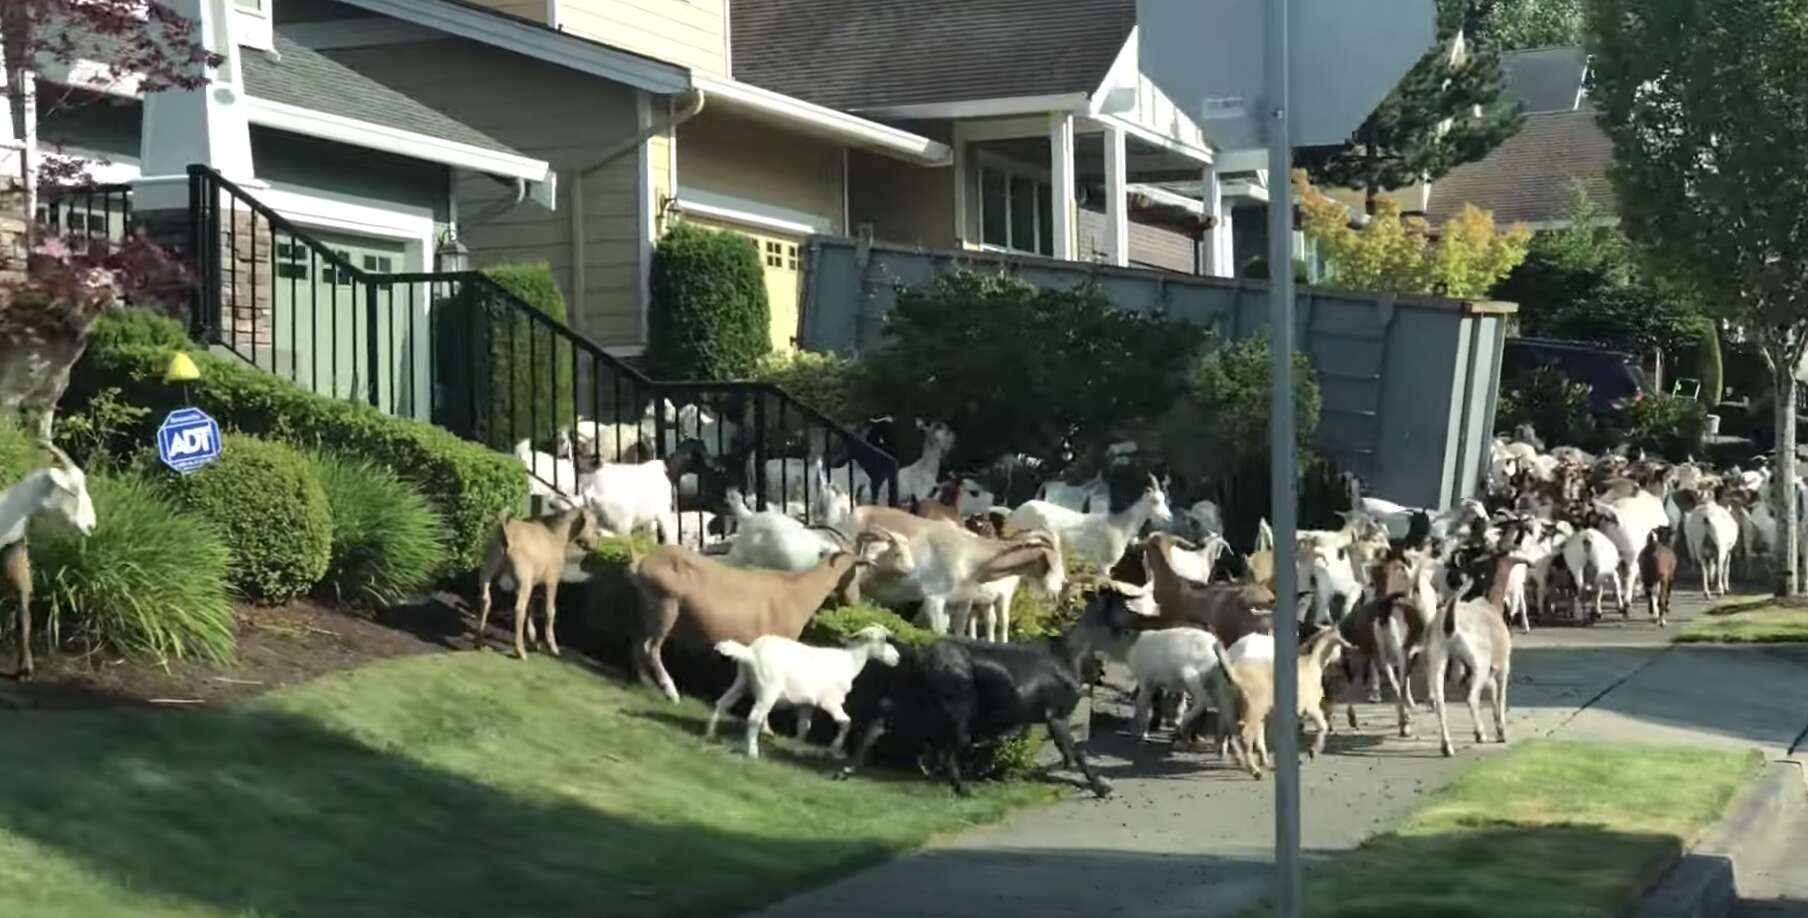 200 goats escape